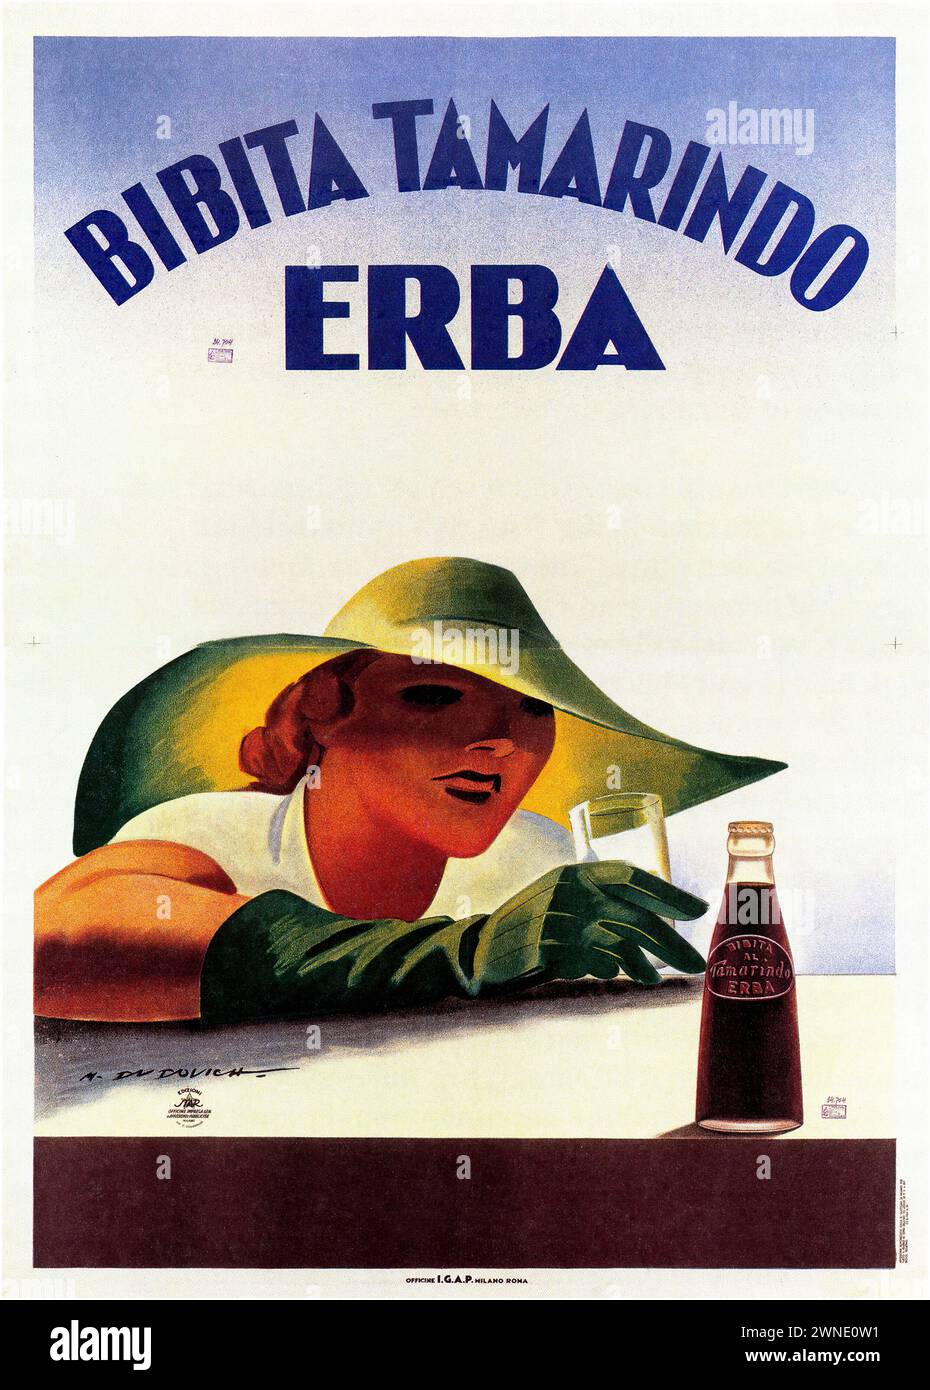 „BIBITA TAMARINDO ERBA“ [„TAMARINDO ERBA DRINK“] italienische Vintage-Werbung, in der eine Frau mit modischem Hut dargestellt wird, die ihren Arm mit einer Flasche Tamarindo Erba auf einem Tisch liegt. Der Stil ist elegant mit weichen Kurven und einem warmen Farbschema, das auf die kommerzielle Kunst der Zeit hinweist. Stockfoto